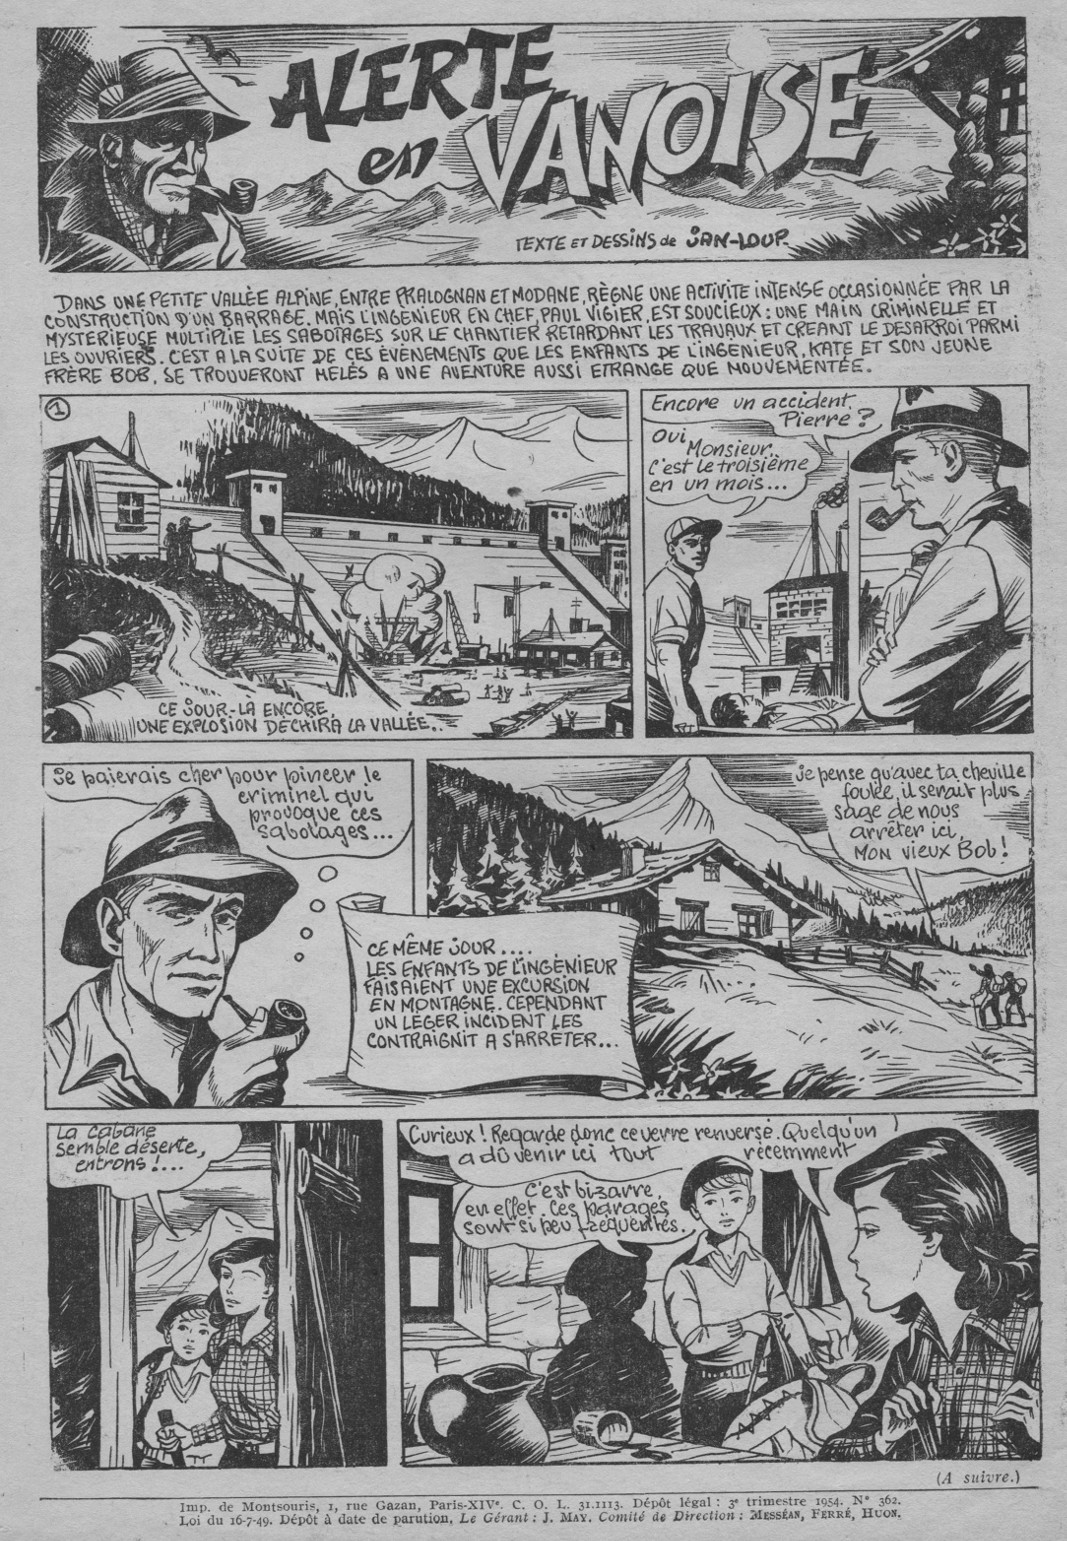 « Alerte en Vanoise », dans Lisette, en 1954 (n° 33).